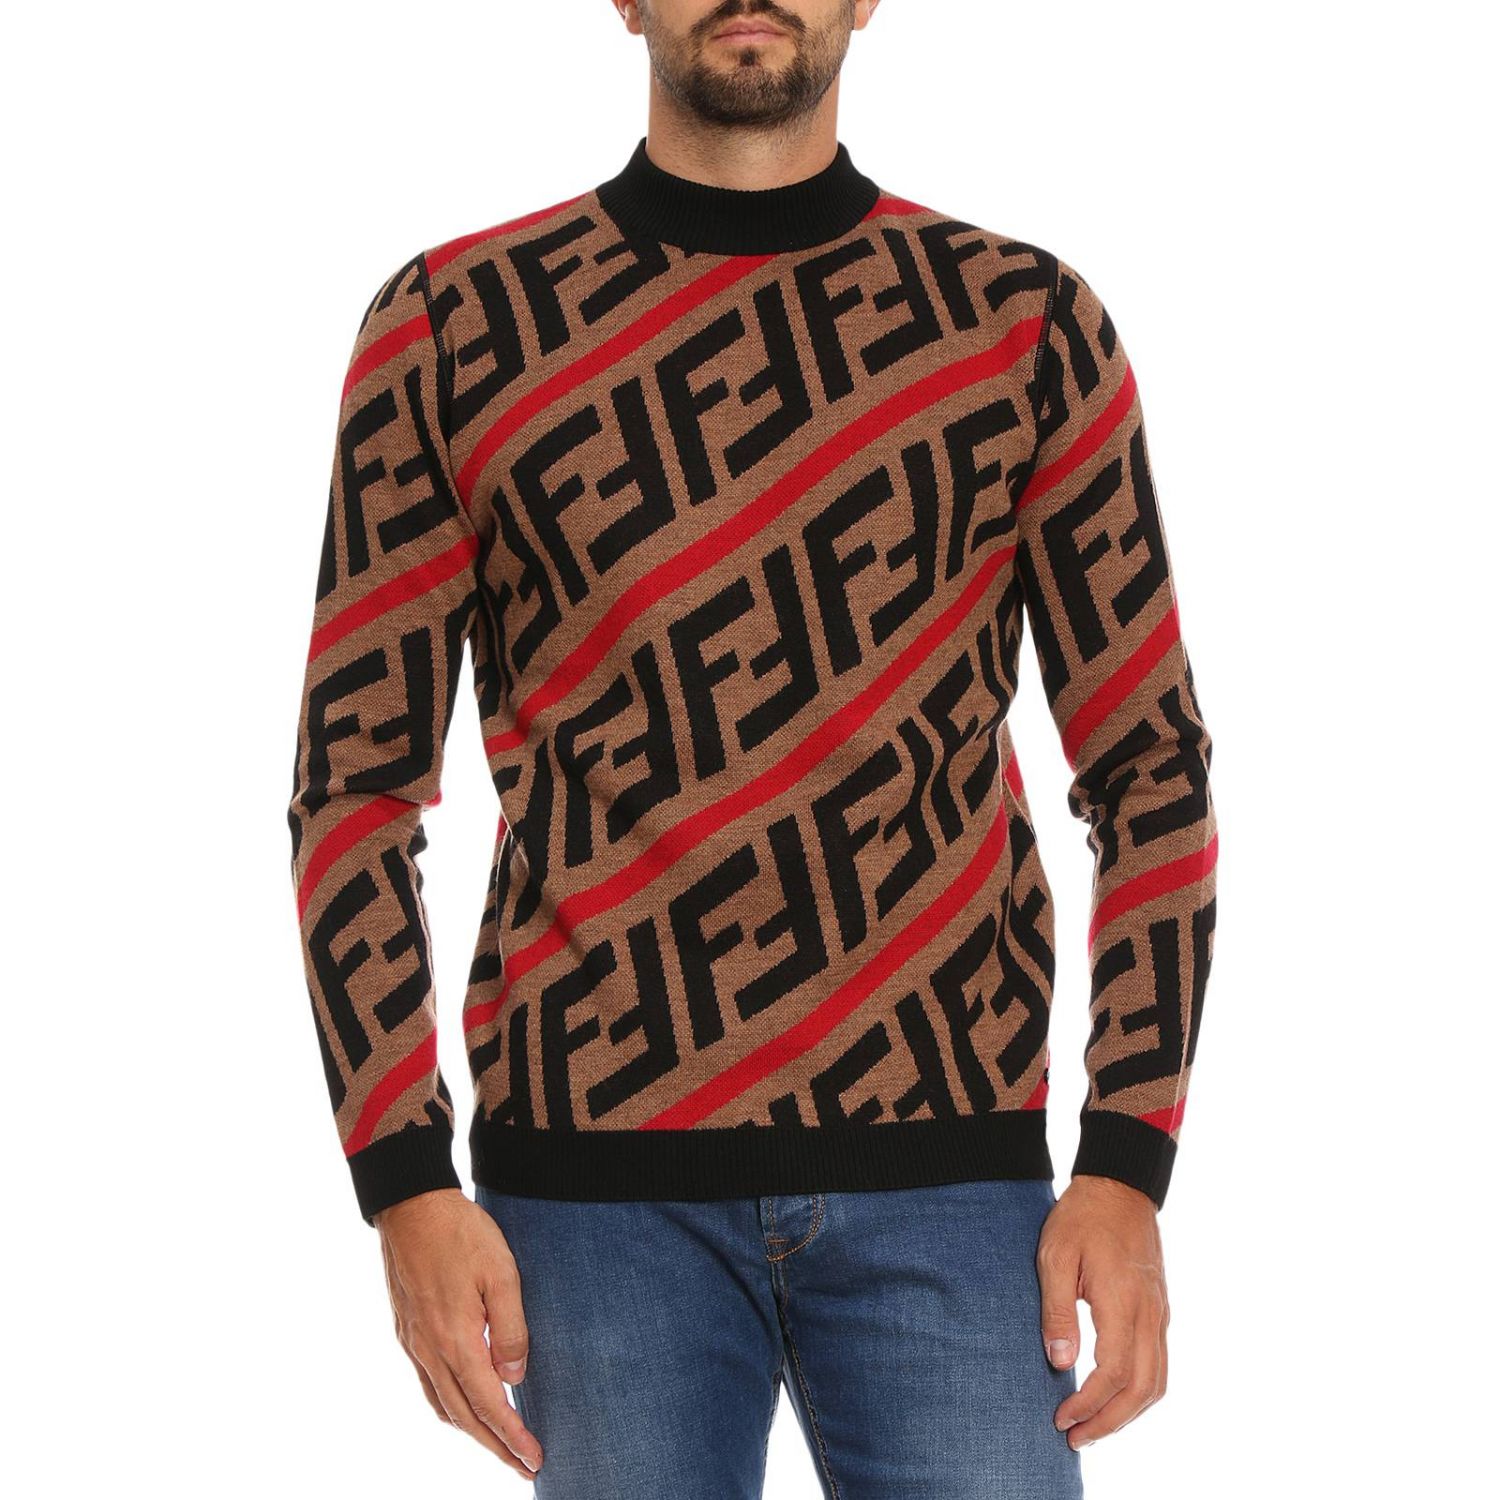 FENDI: Sweater men | Sweater Fendi Men 